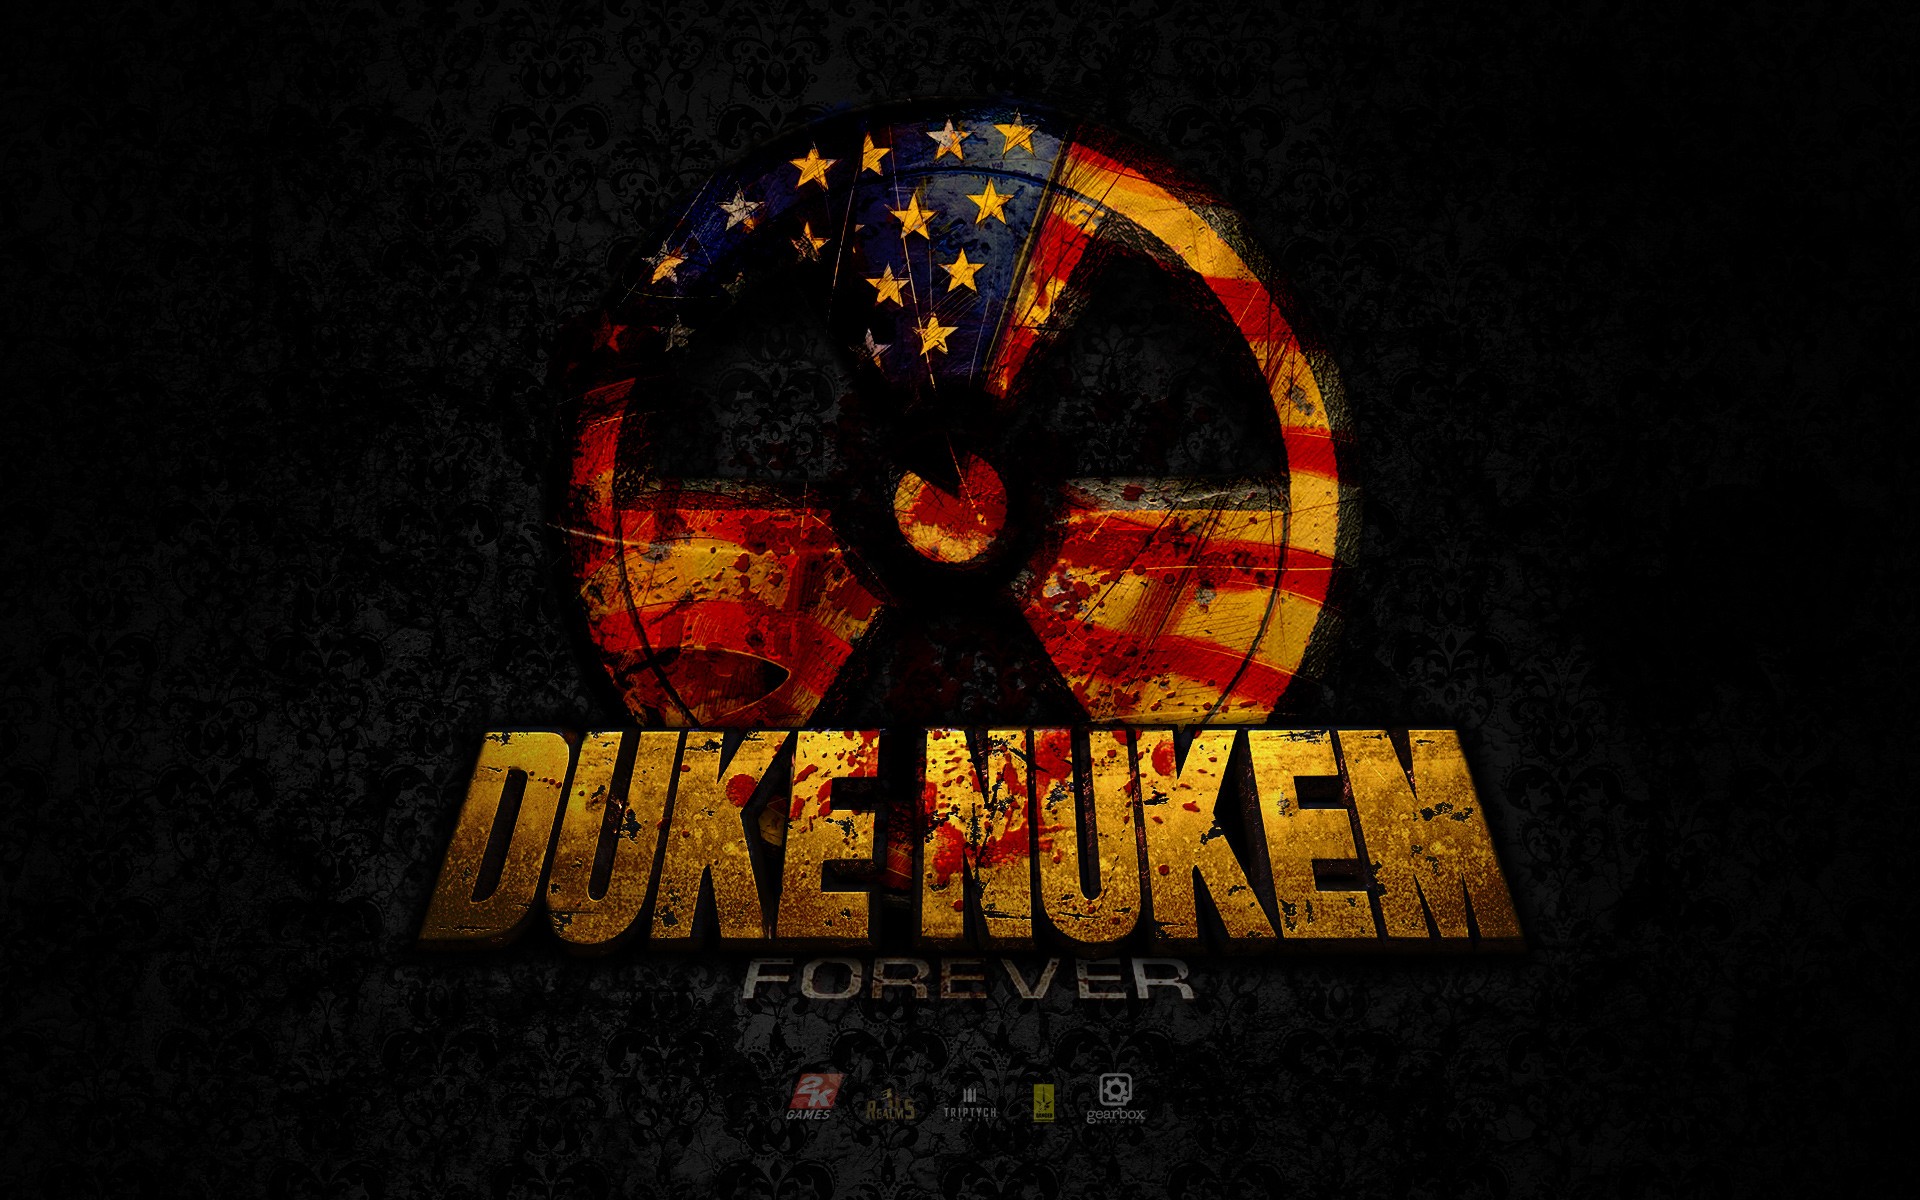 General 1920x1200 logo Duke Nukem Forever nuclear video games video game art